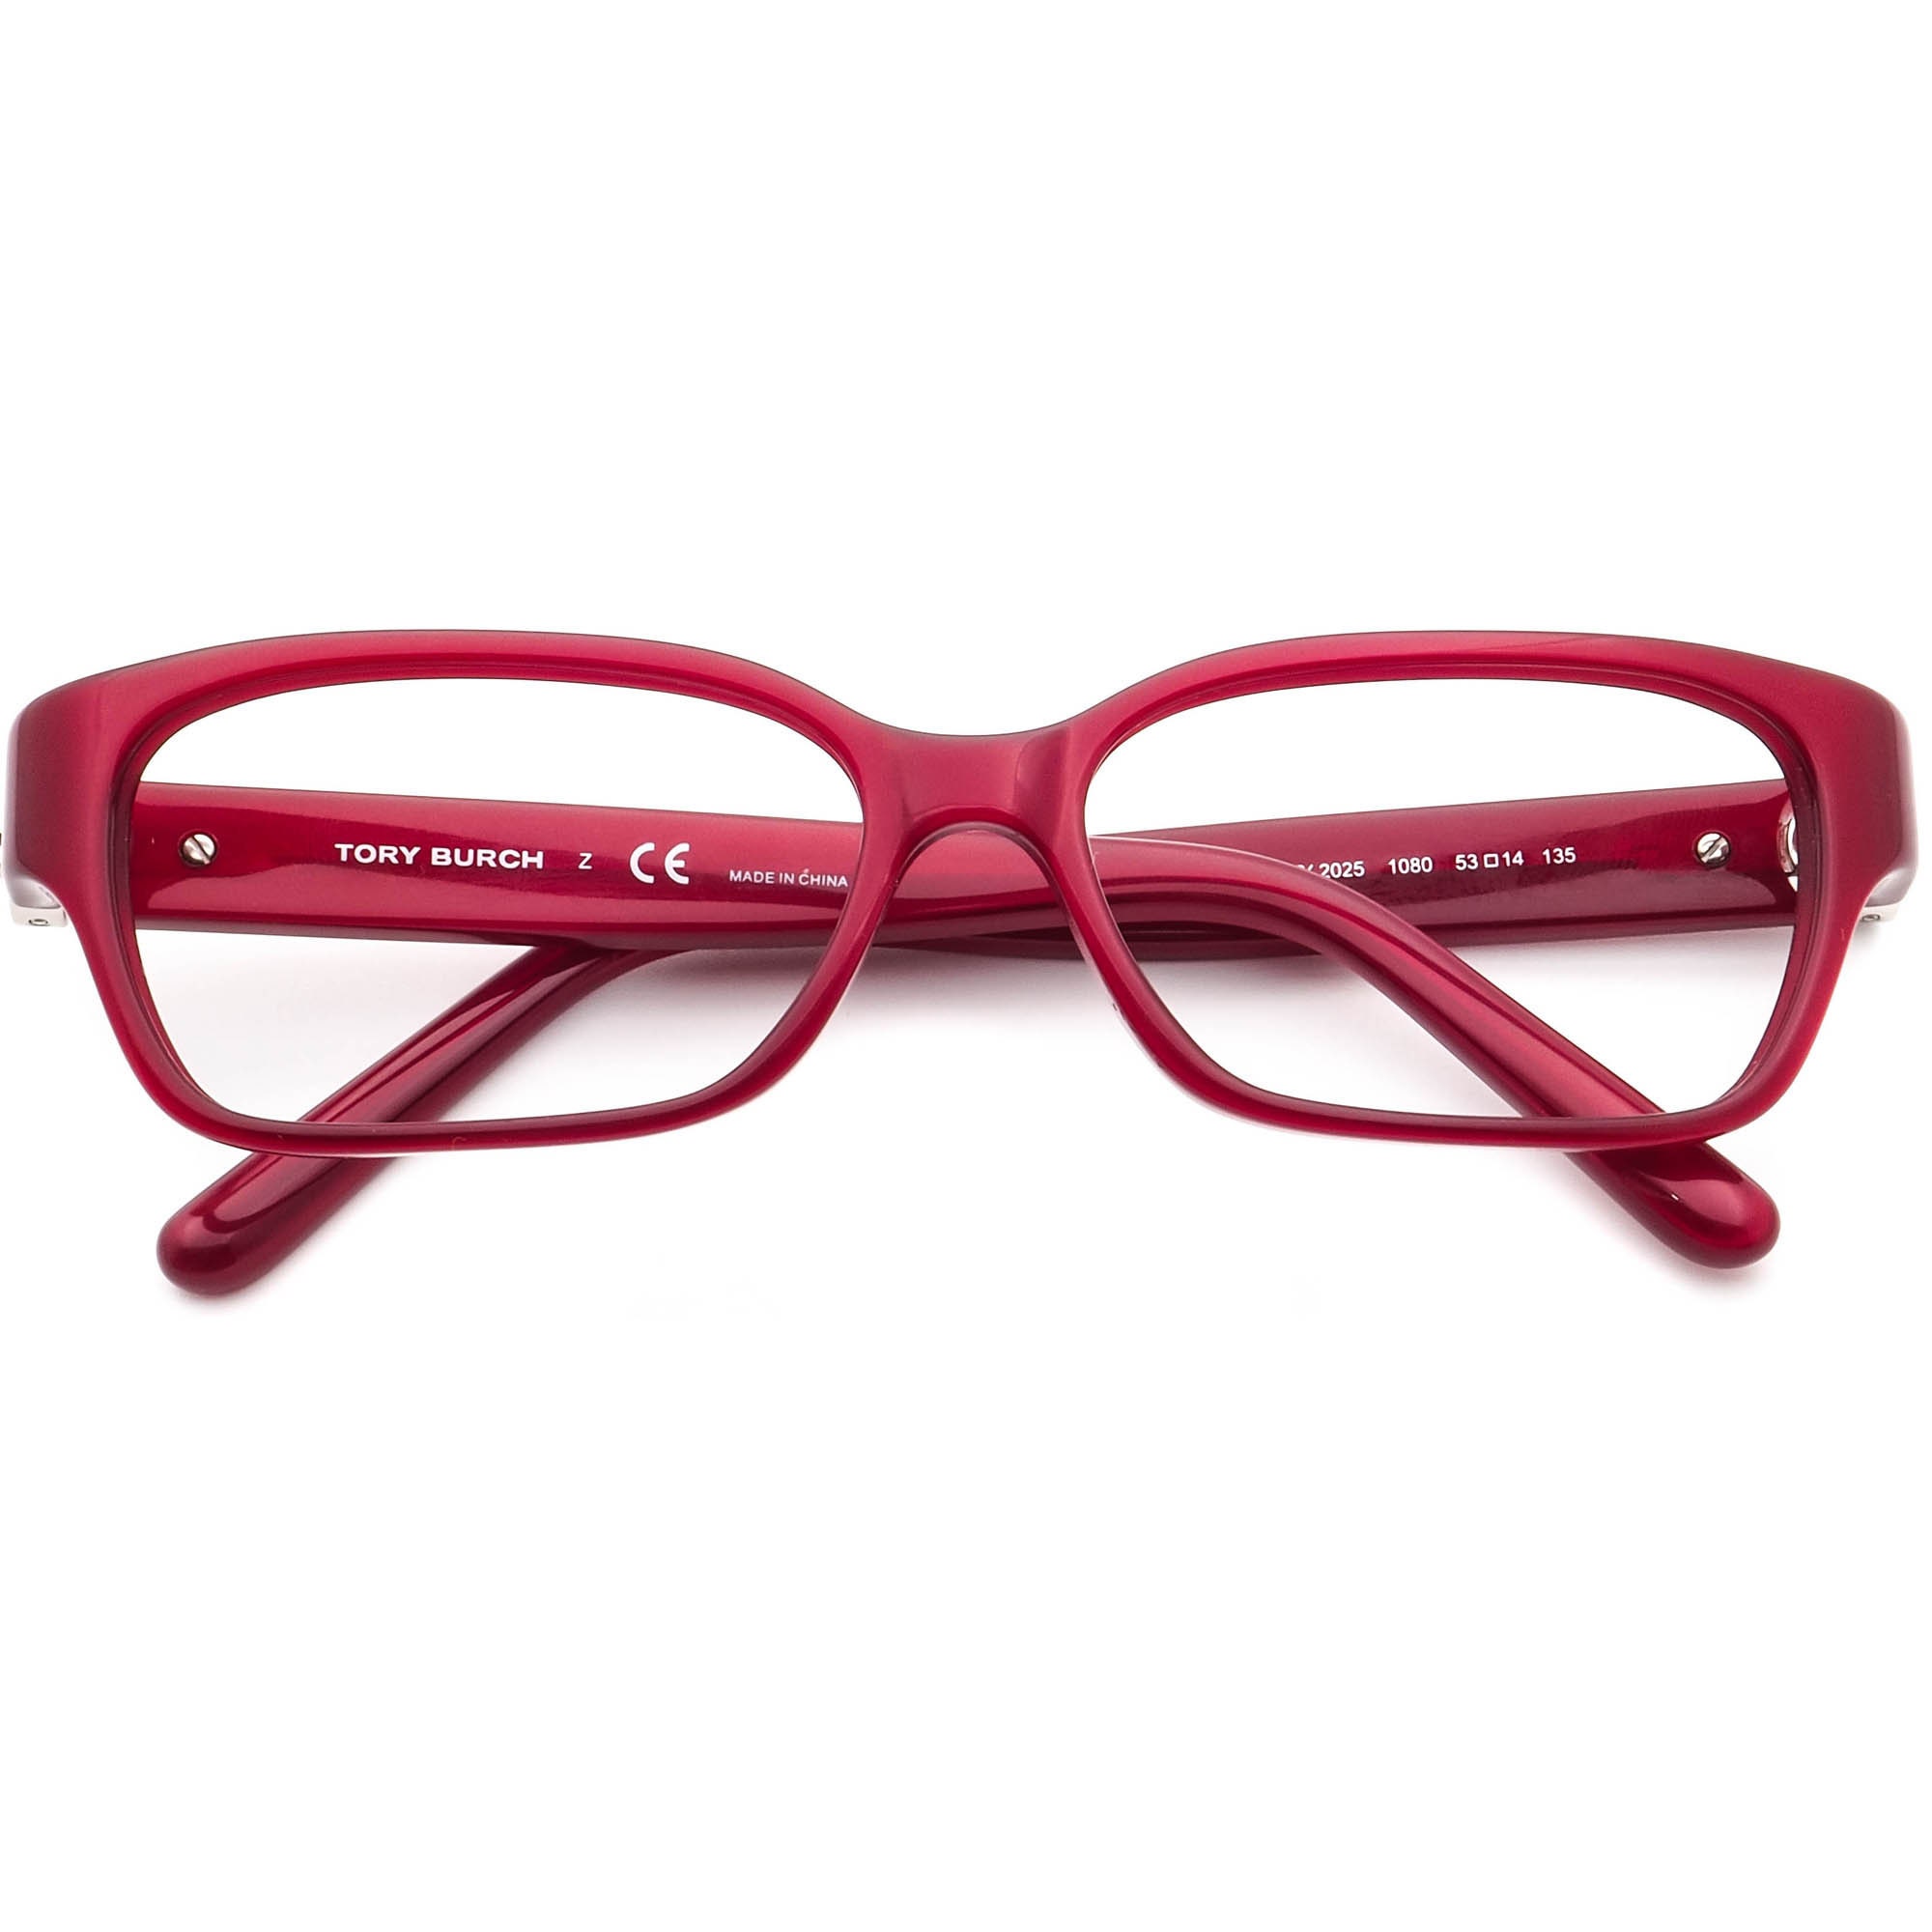 Tory Burch Women's Eyeglasses TY 2025 1080 Burgundy - Etsy